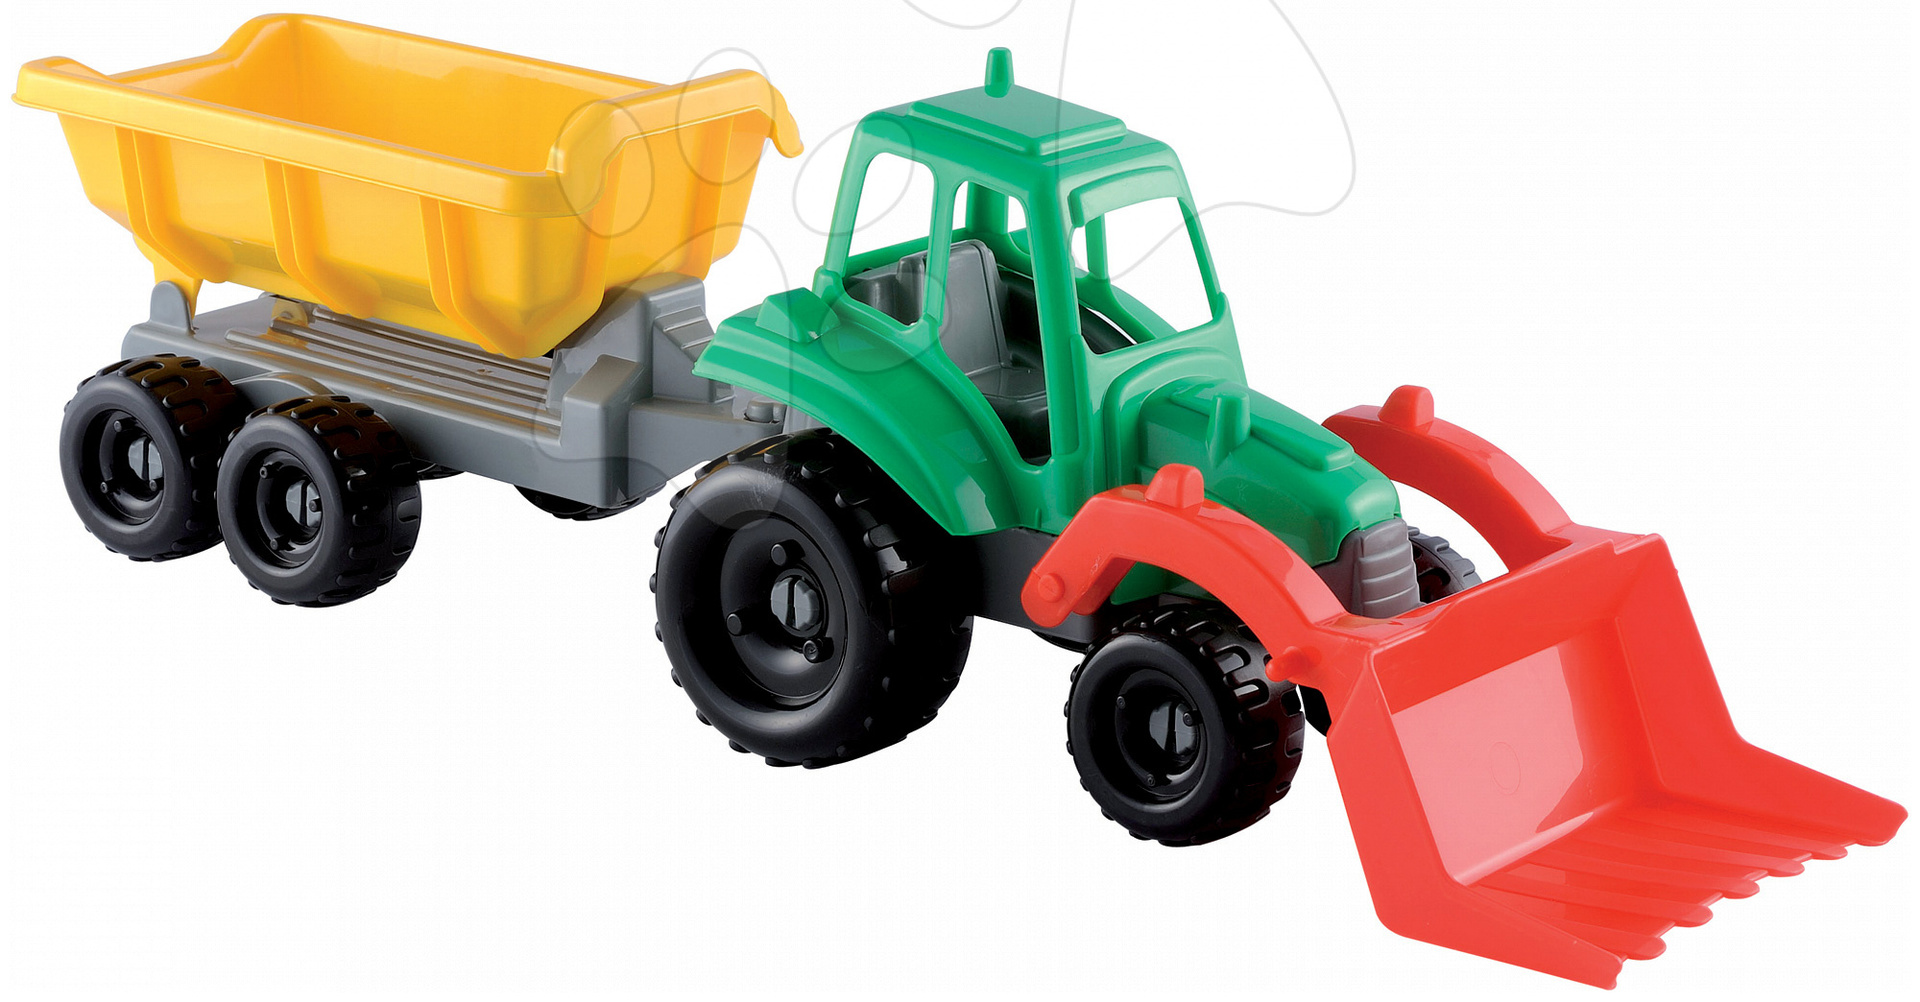 Écoiffier veľký traktor pre deti s vlečkou 327